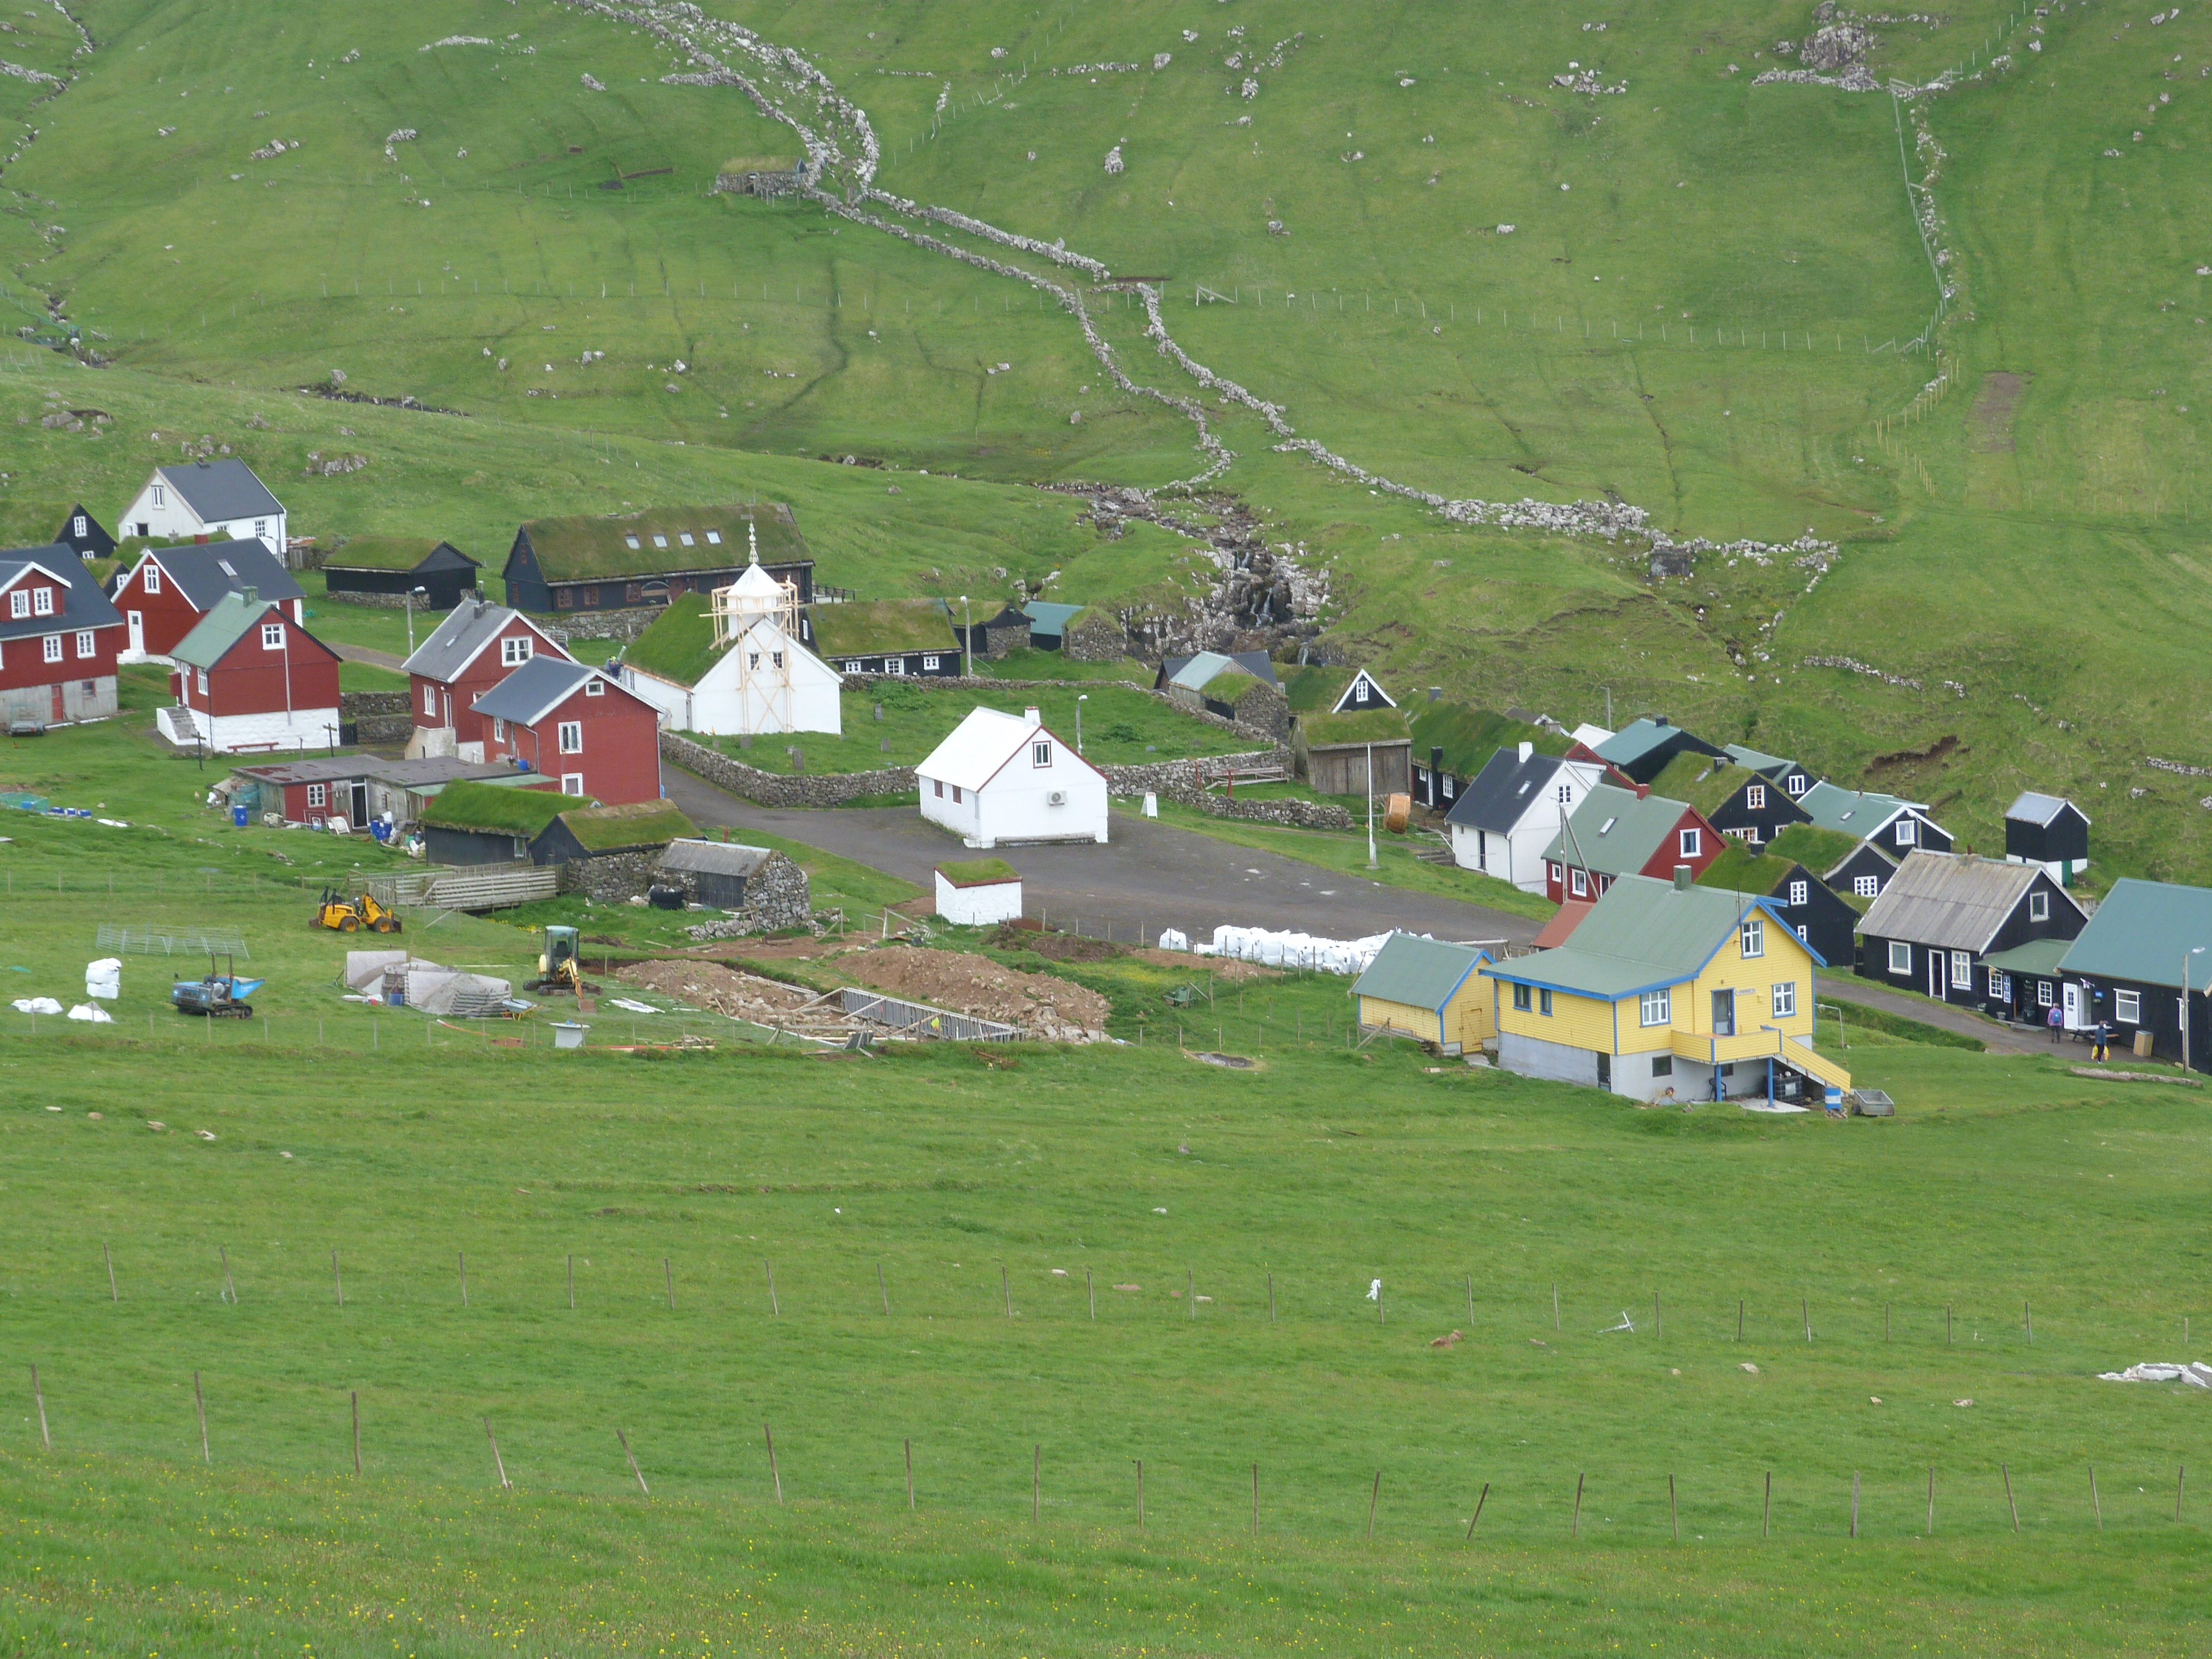 Diario de Viaje Islas Feroe - El Reino de Thor - Blogs de Dinamarca - DIA 2 - Mykines, el hogar de los frailecillos (4)